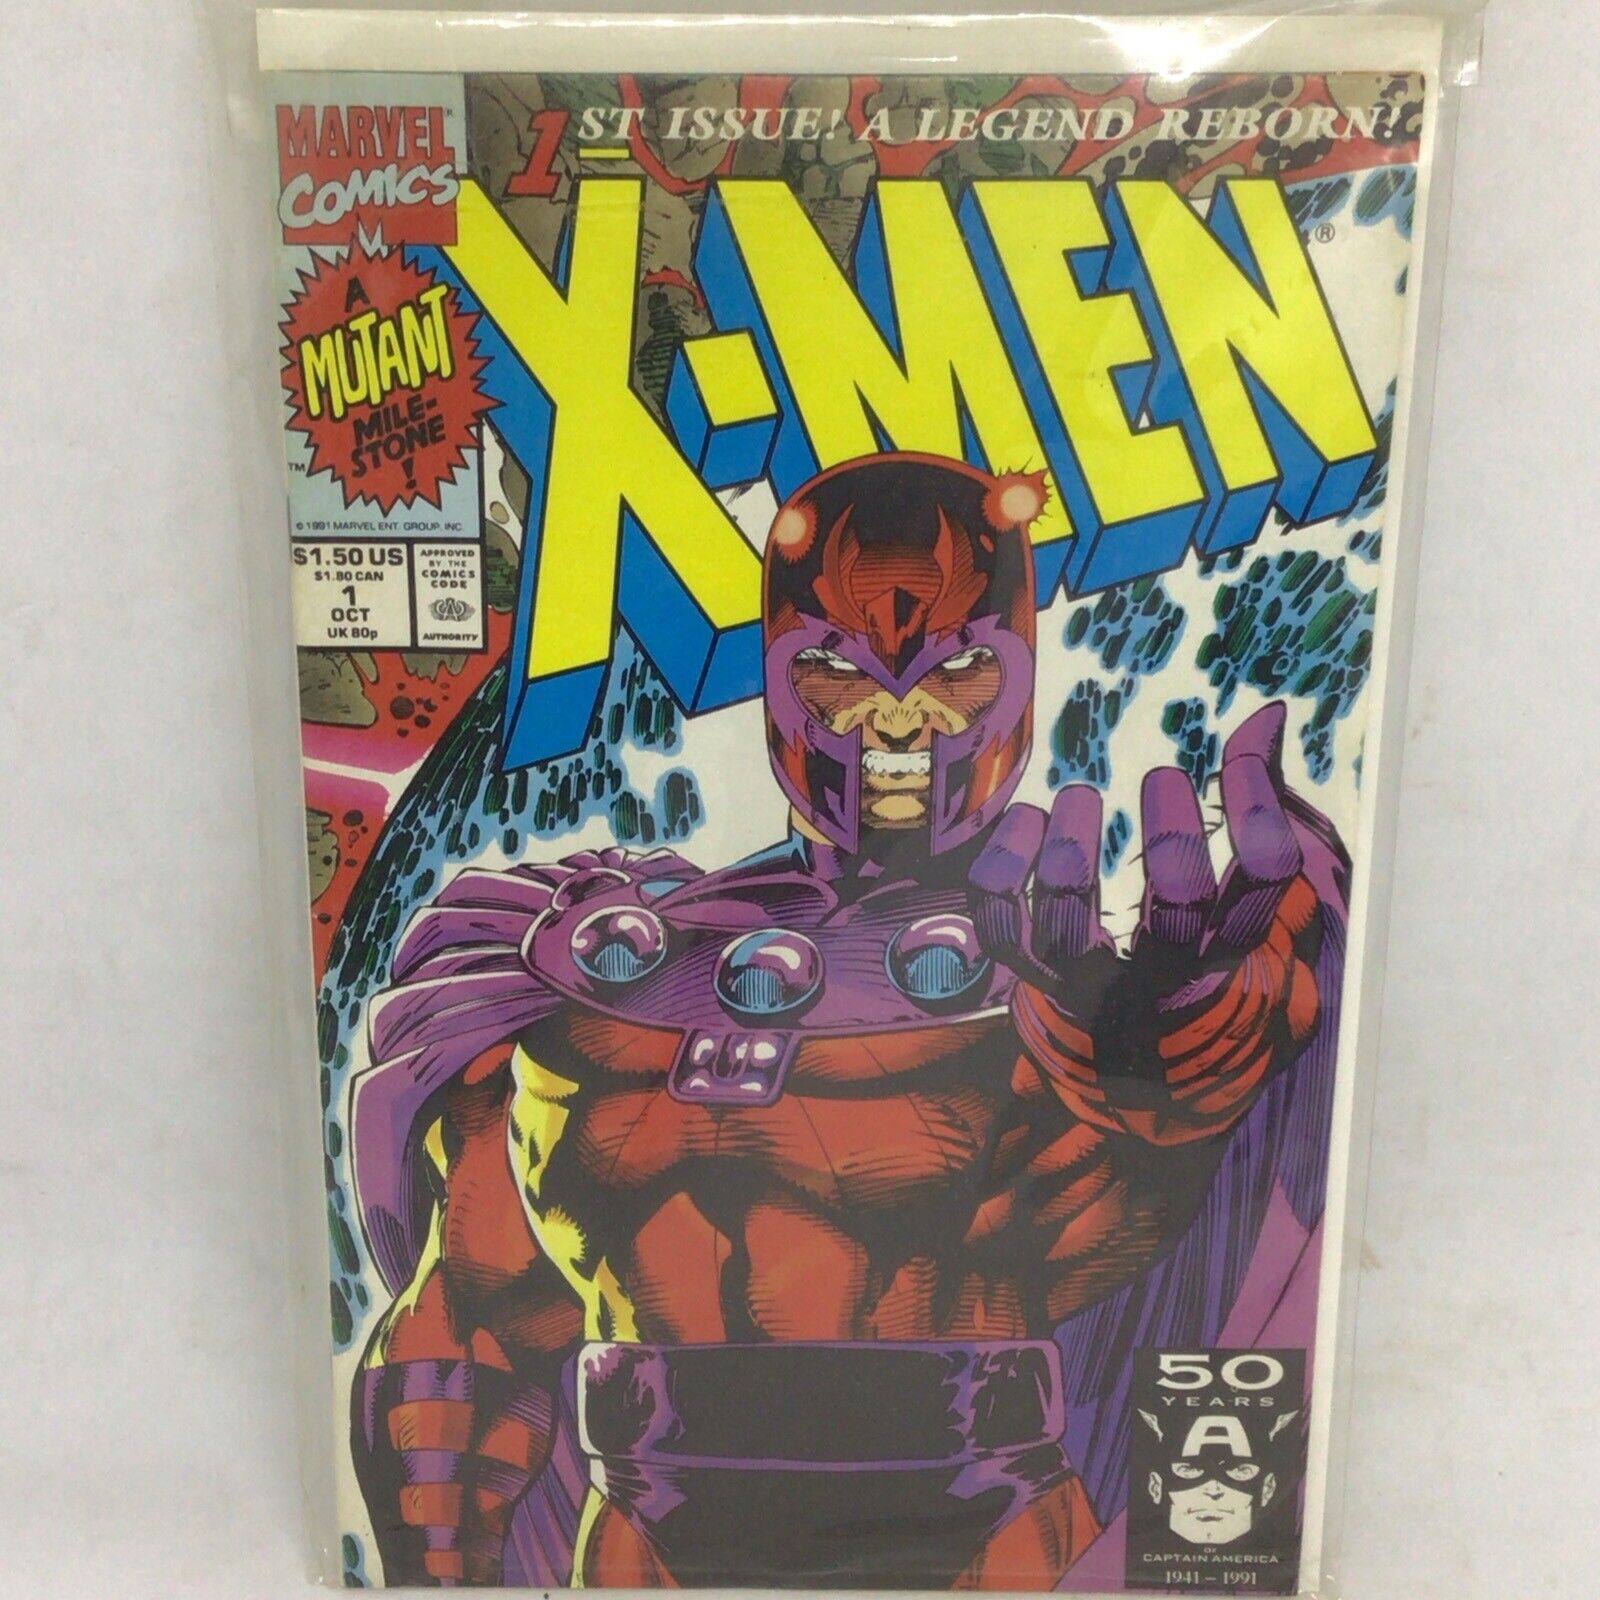 Vintage October 1991 Marvel Comics X-MEN 1st Issue Legend Reborn MAGNETO Cover